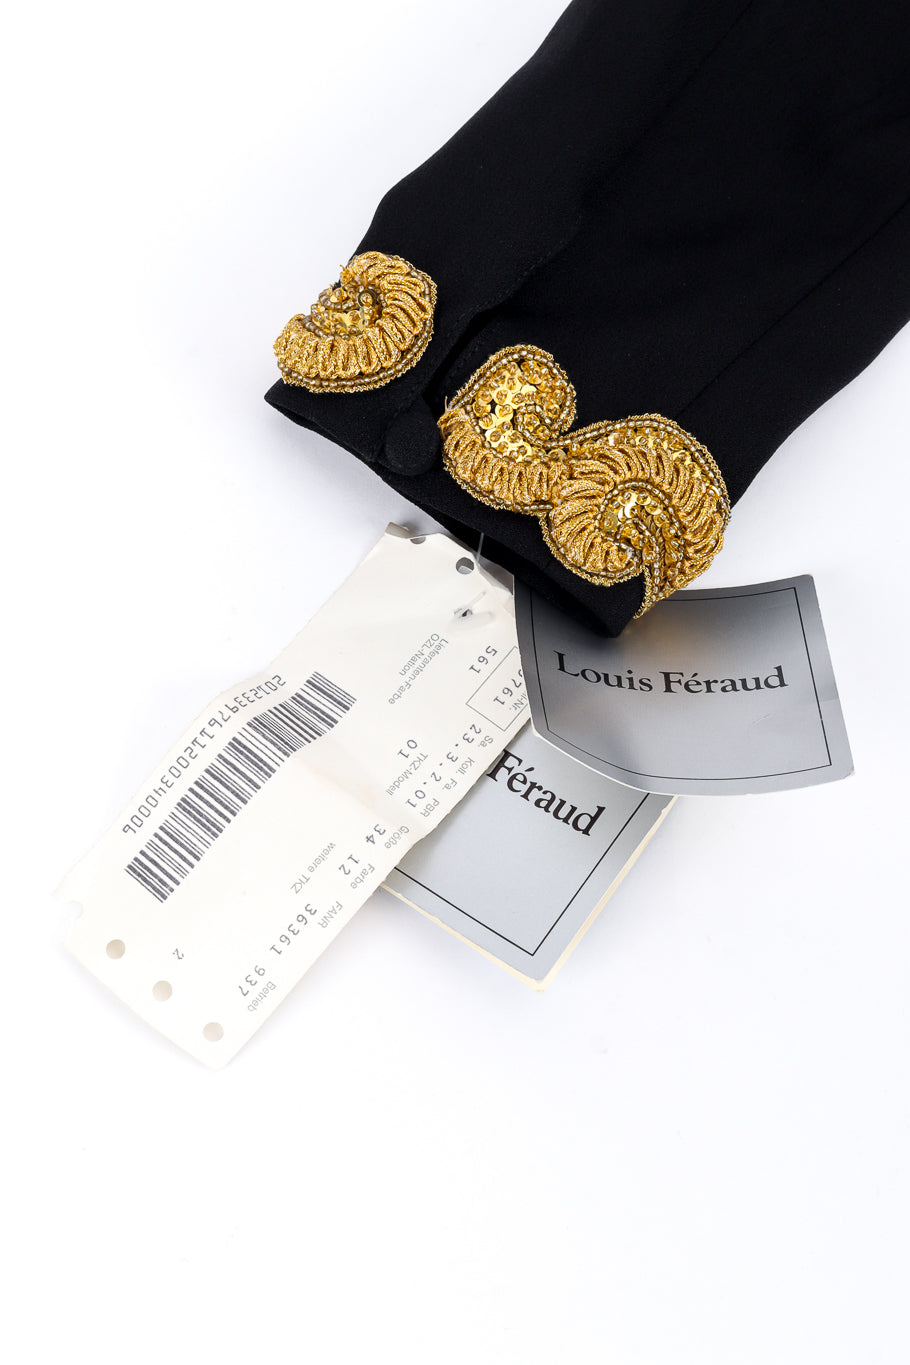 Vintage Louis Féraud Gilded Soutache Trim Dress hang tags @recess la